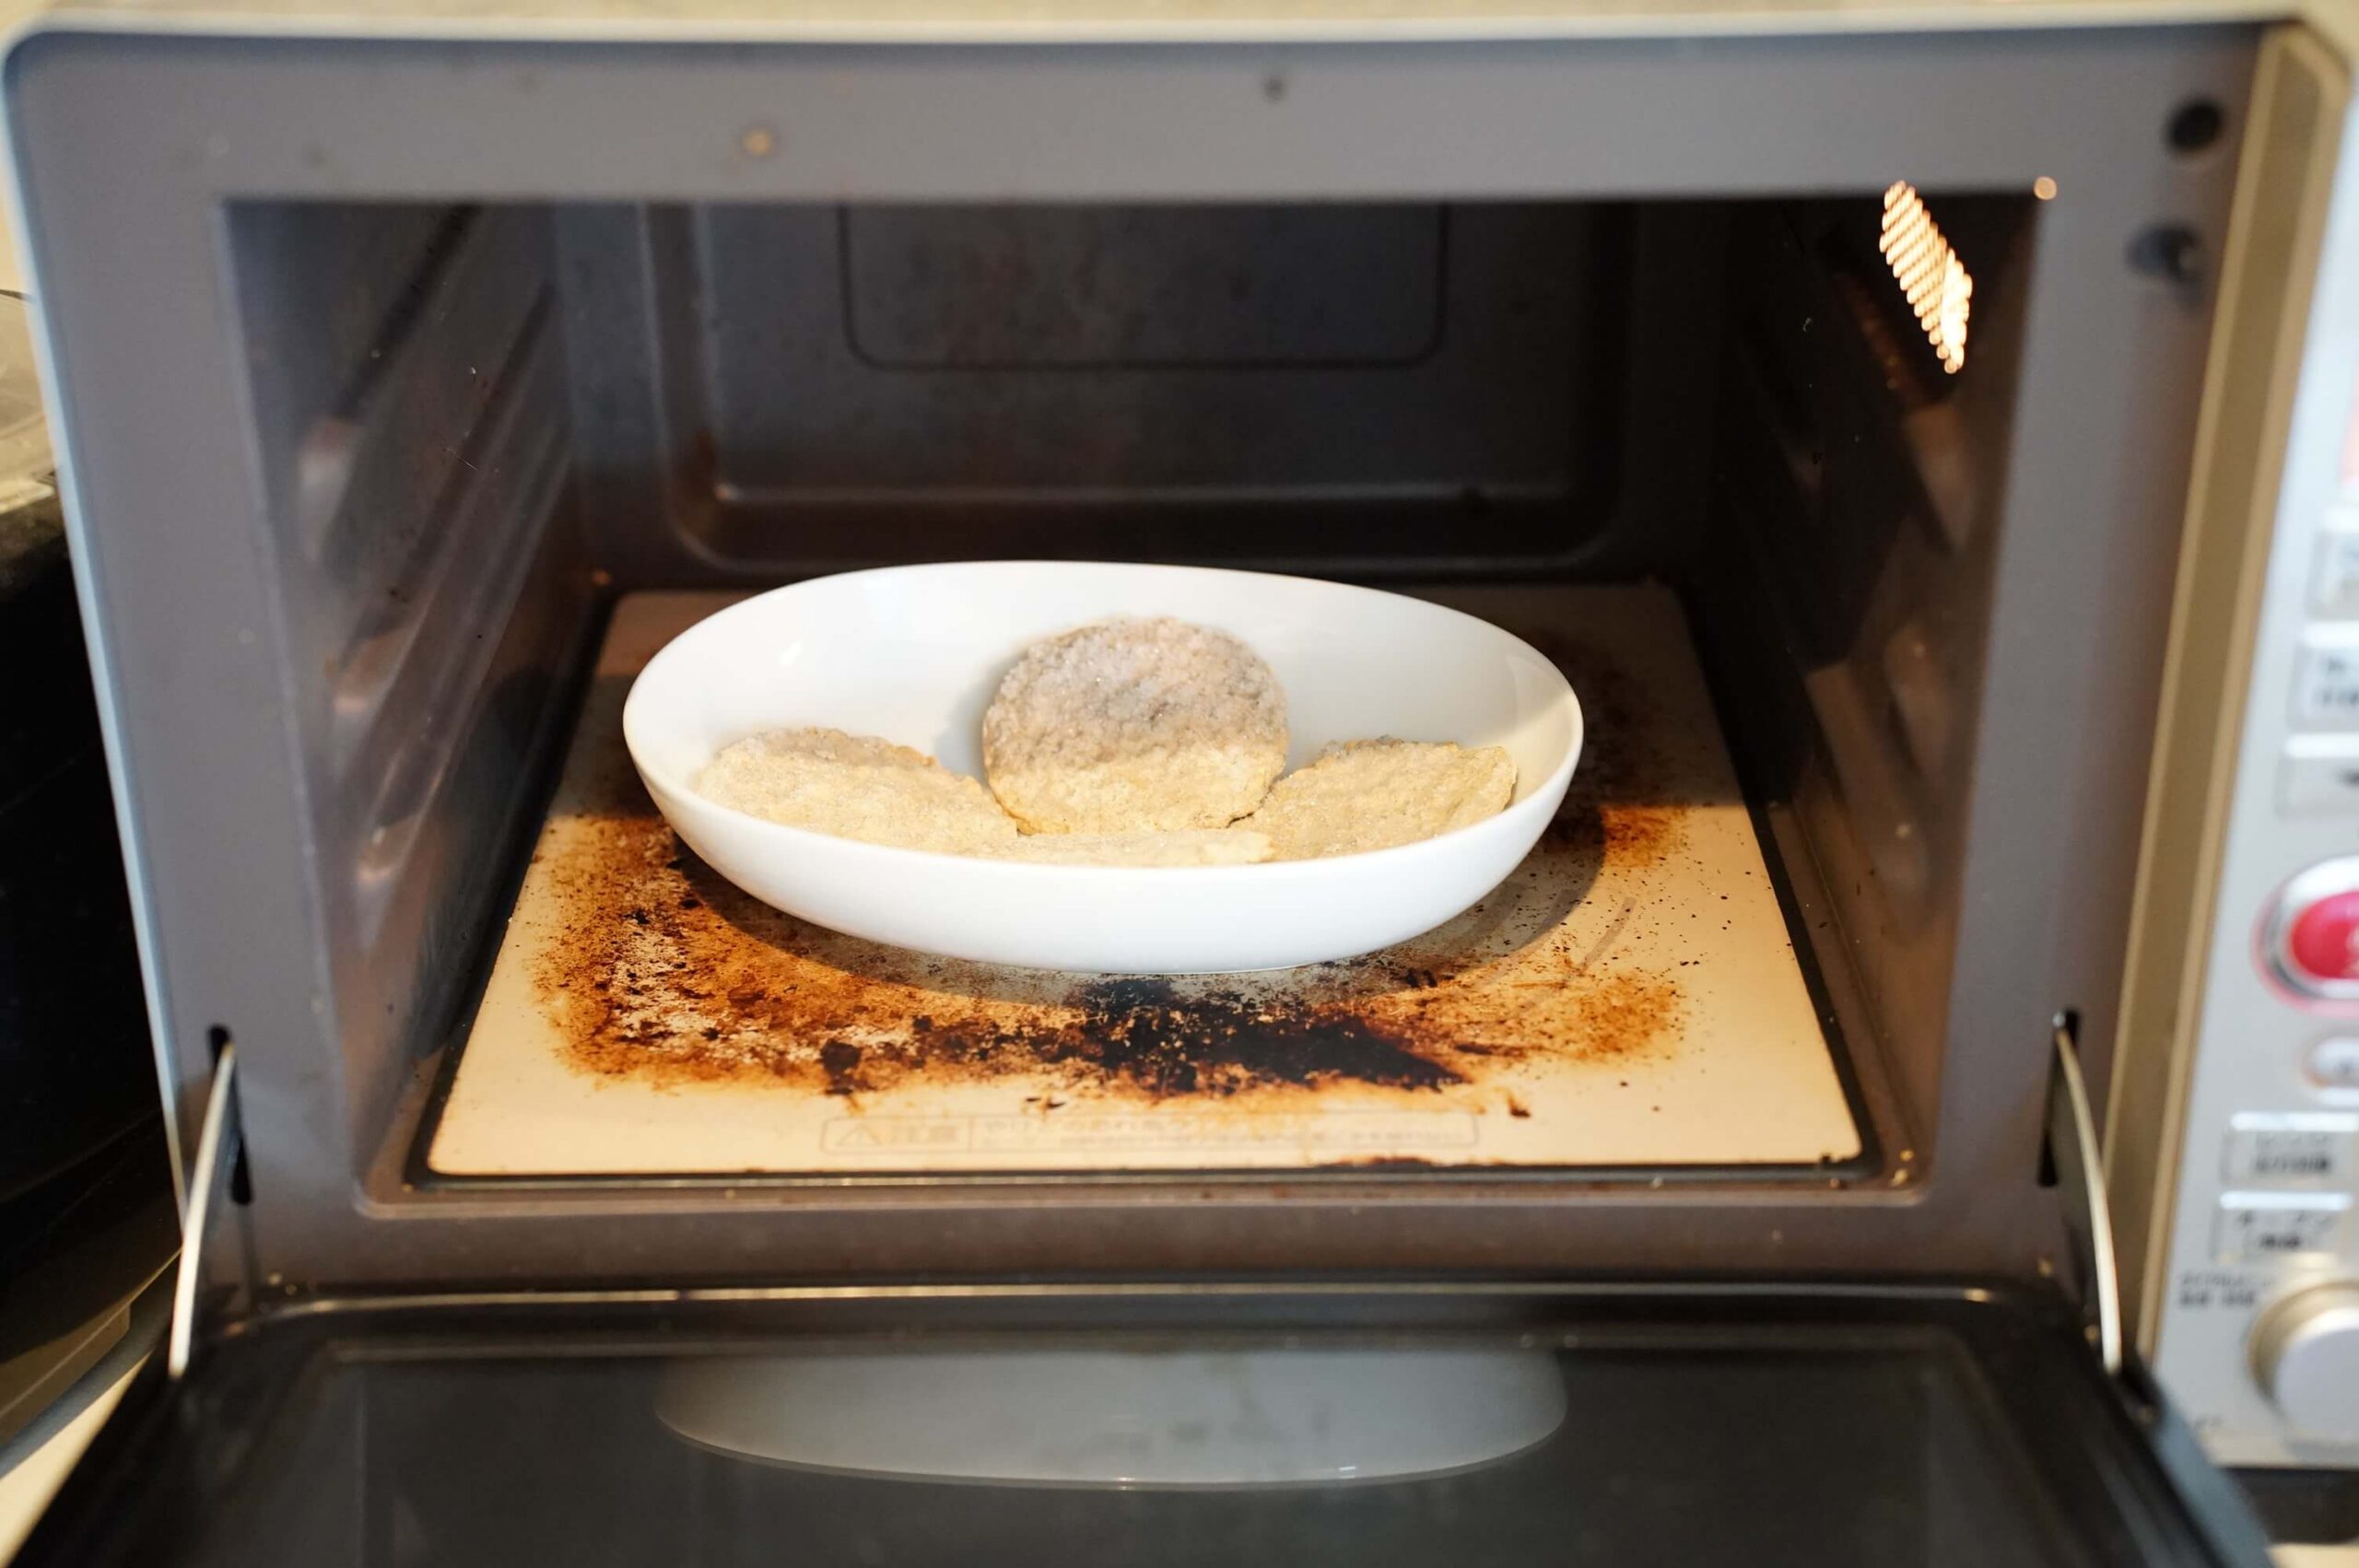 コストコの冷凍食品「ブレックファースト・パティズ」を電子レンジで加熱している写真